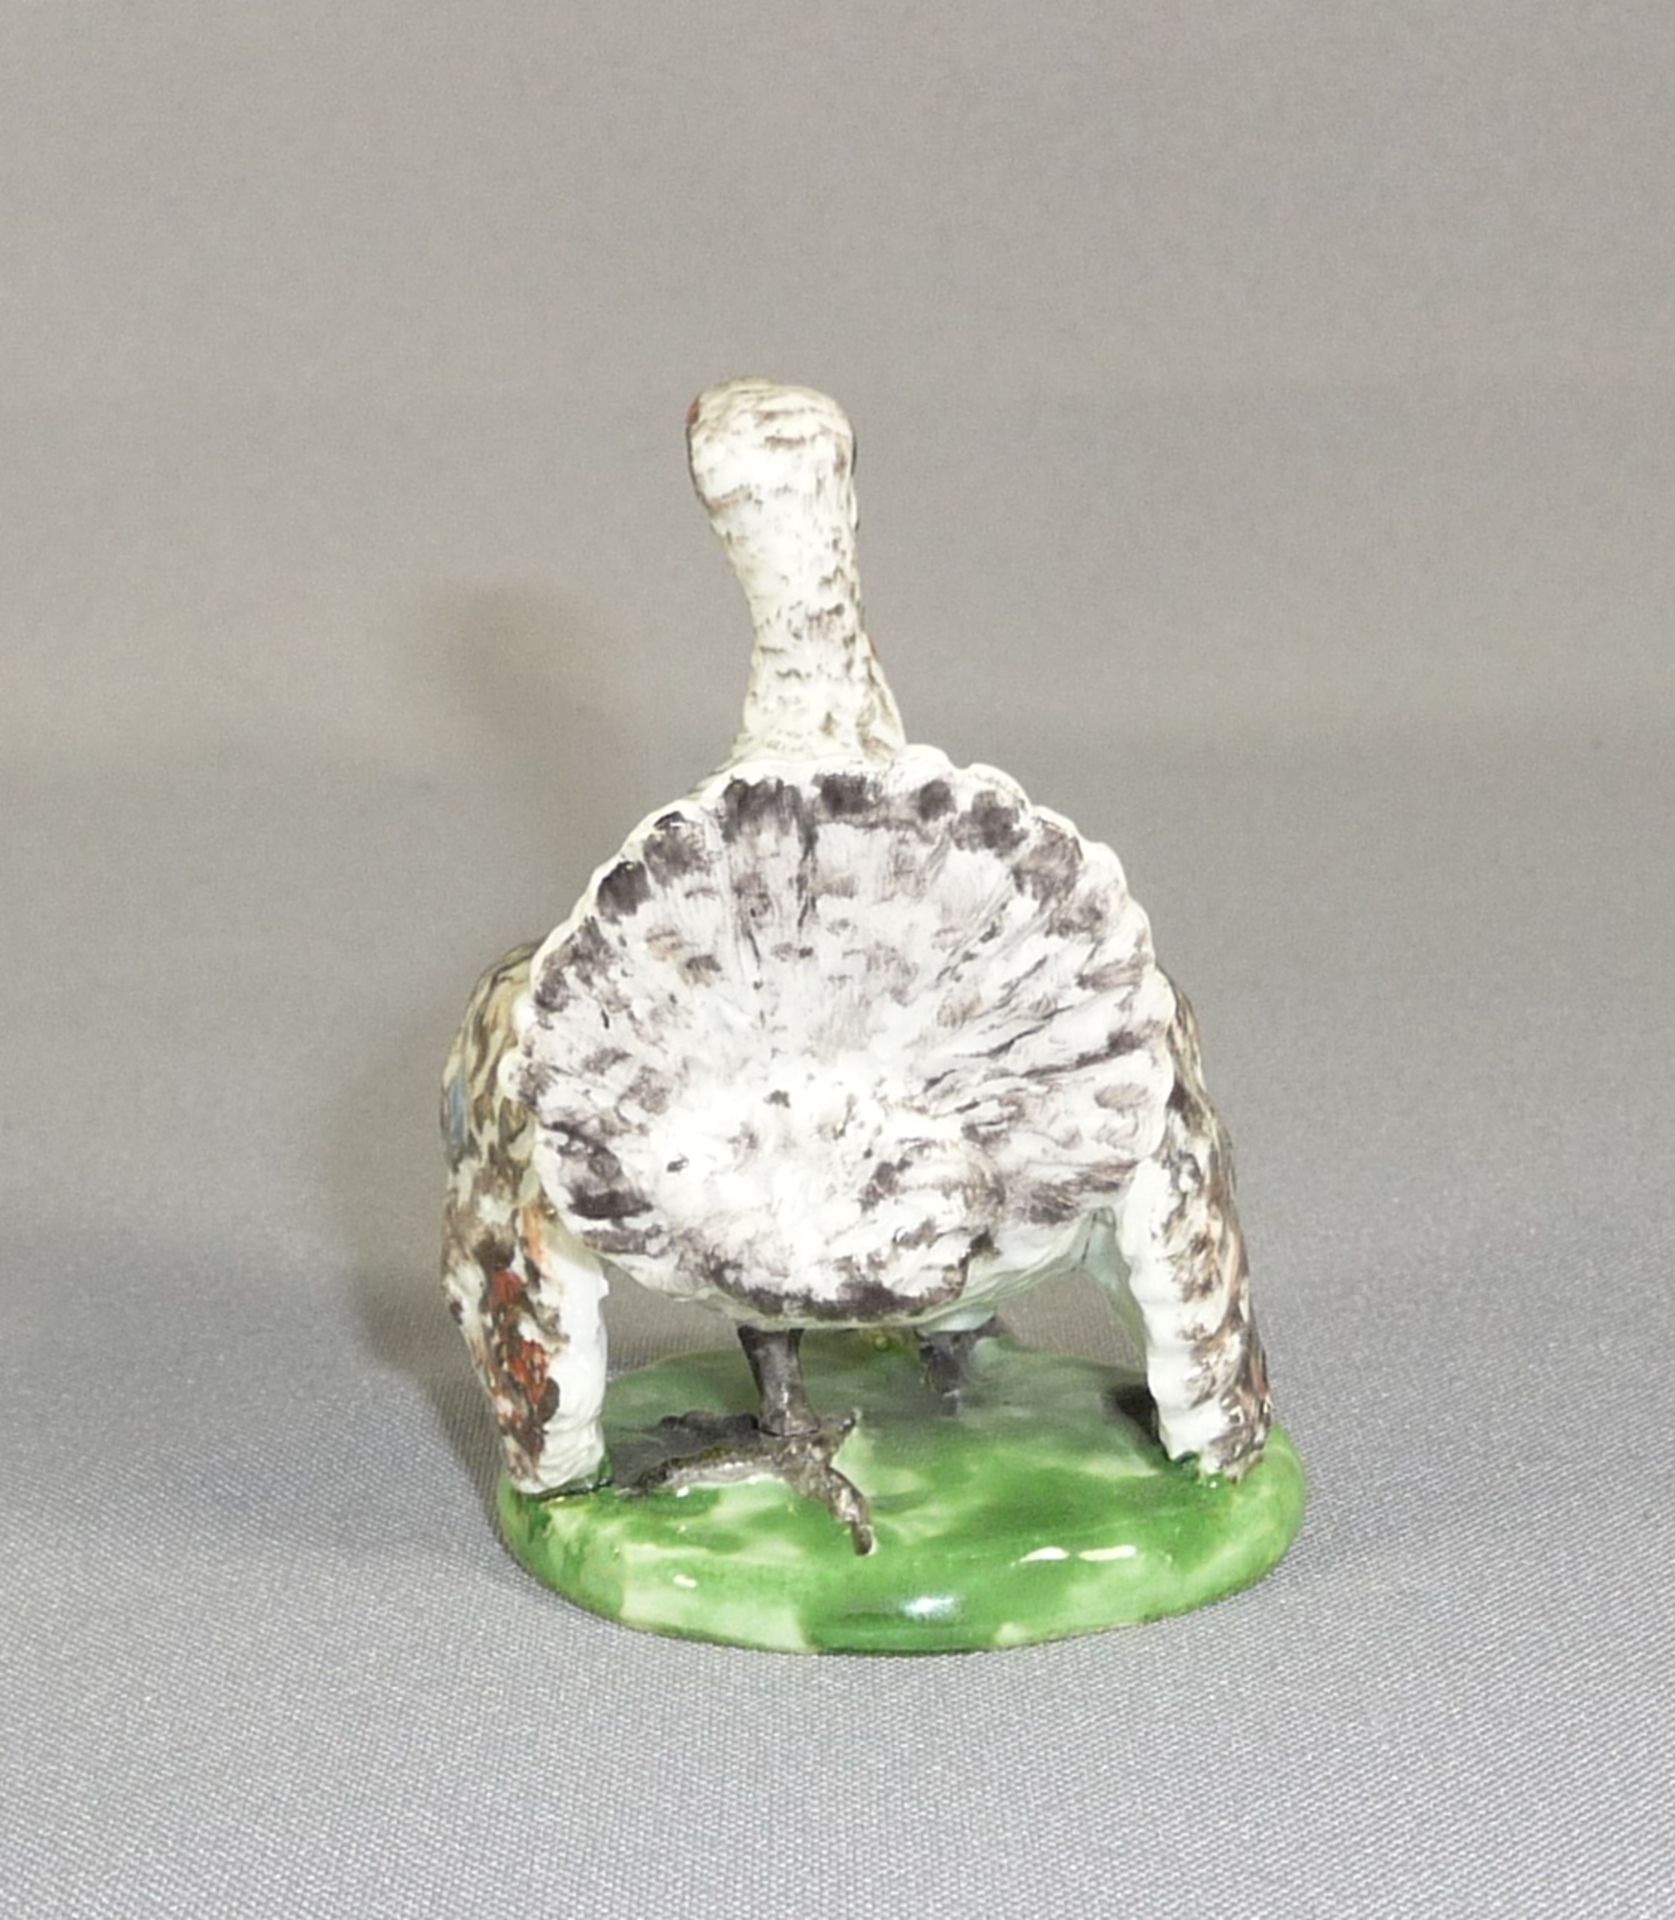 Seltene Miniaturfigur eines Truthahns Ludwigsburg, 18. Jh. Porzellan mit naturalistischer - Bild 5 aus 6